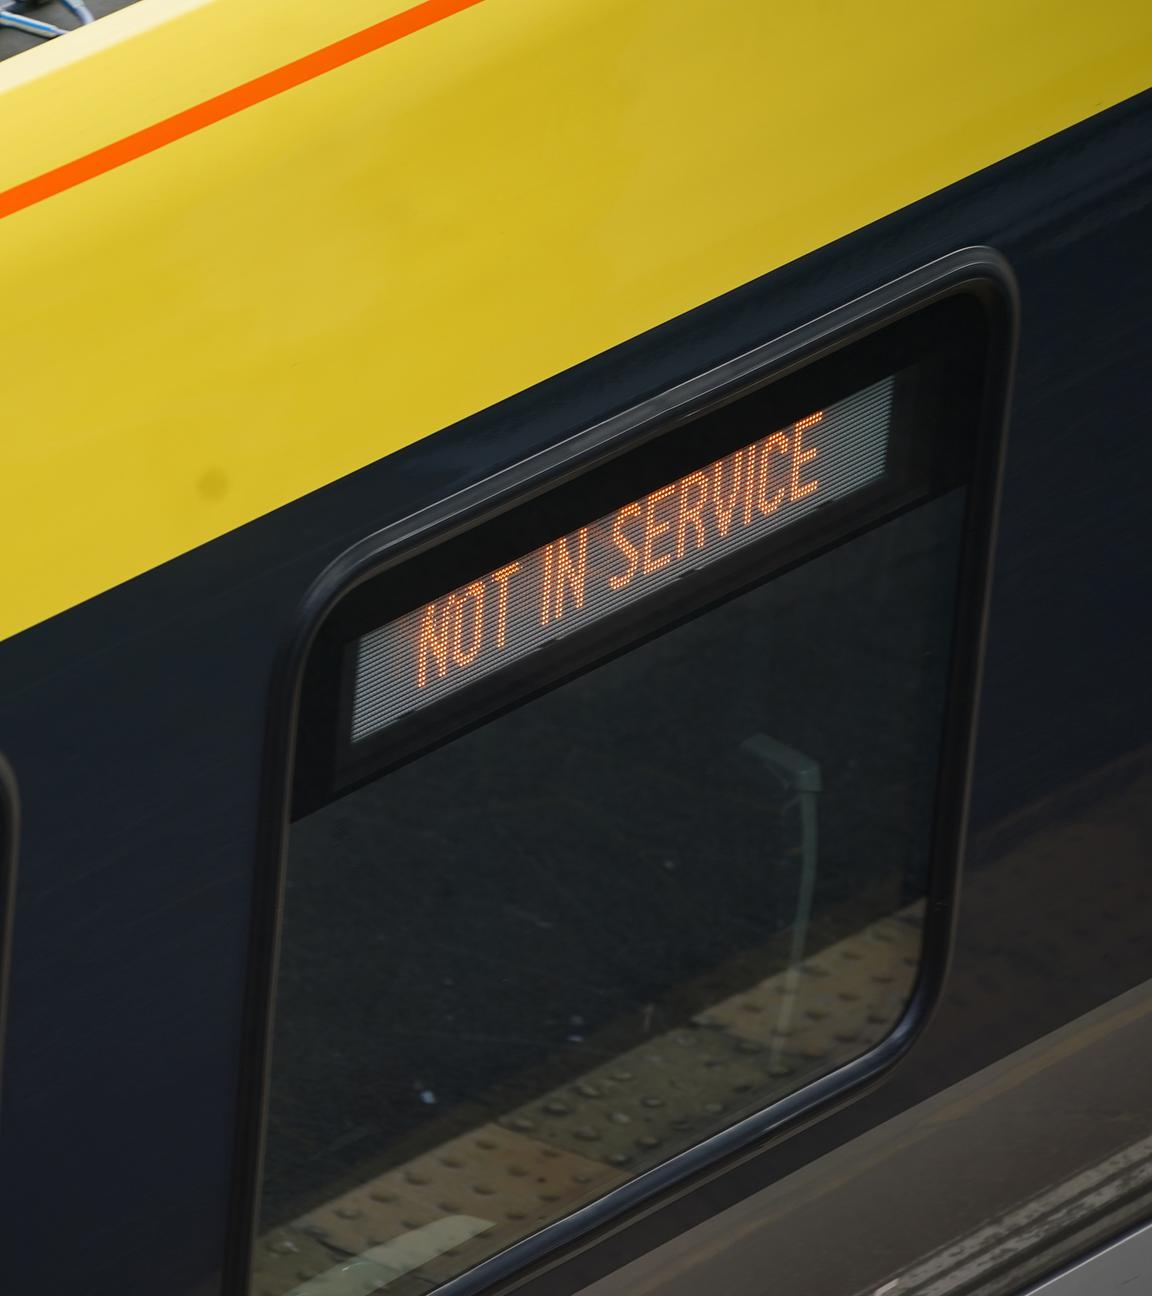  "Not in service" steht auf einem Great Northern Zug im Bahnhof Hunt's Cross, Liverpool, inmitten von Berichten über weitreichende IT-Ausfälle, die Fluggesellschaften, Rundfunkanstalten und Banken betreffen.